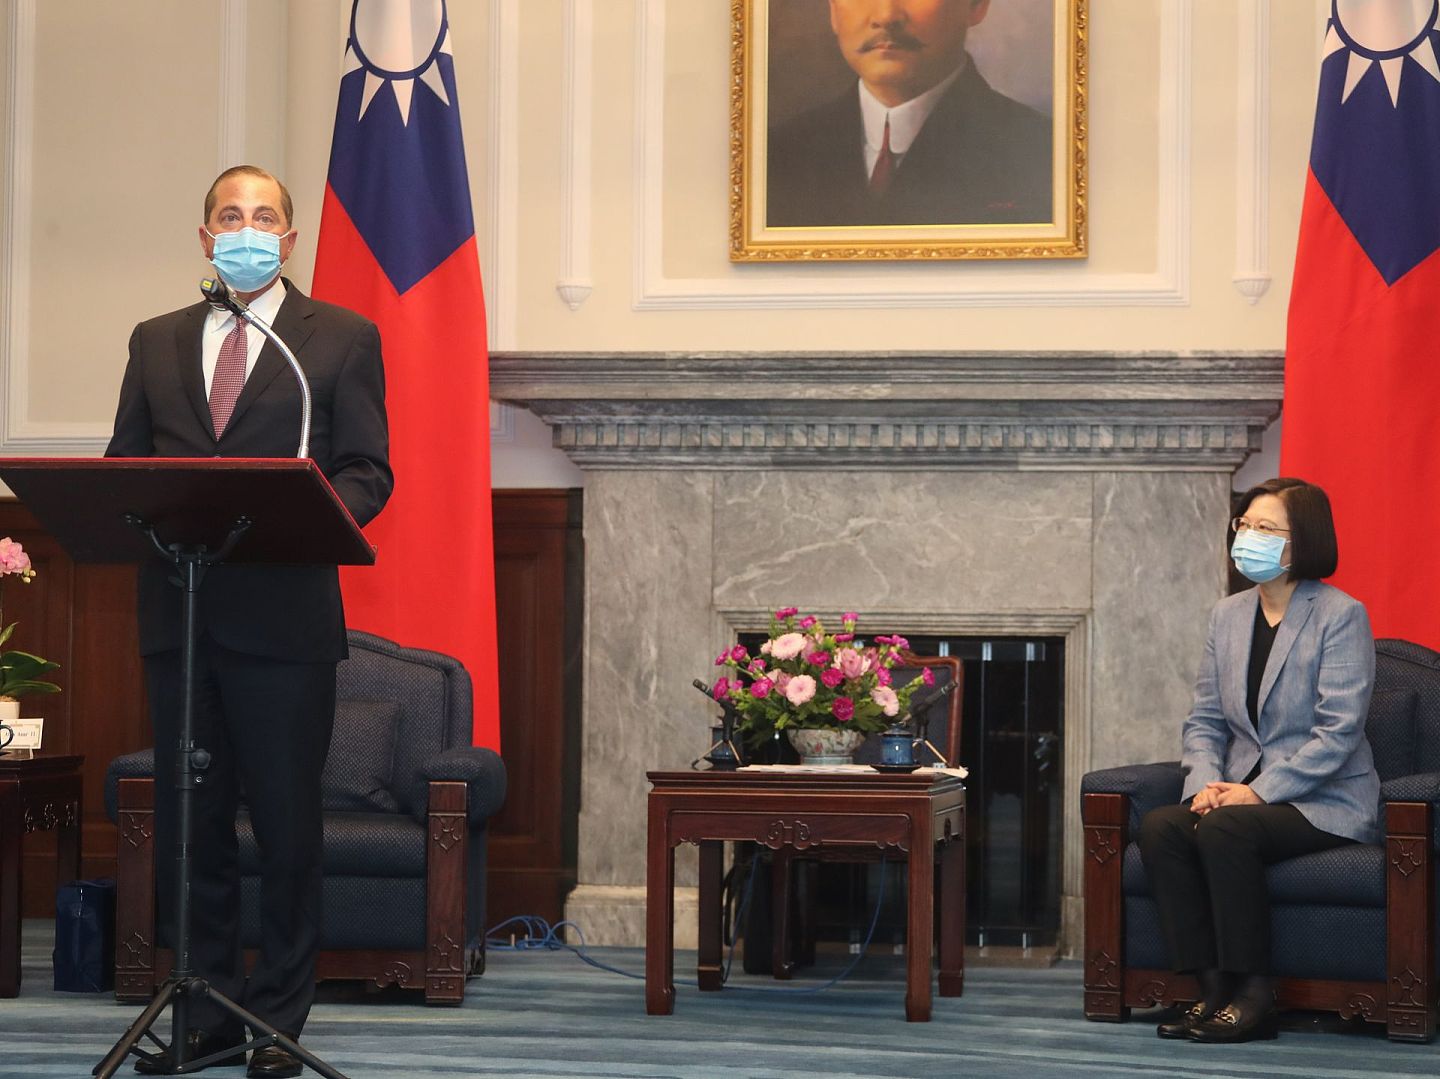 阿扎（Alex Azar）曾在特朗普政府担任卫生部长。图为阿扎（左）2020年8月访问台湾。8月10日，阿扎获台湾领导人蔡英文接见。（中央社）